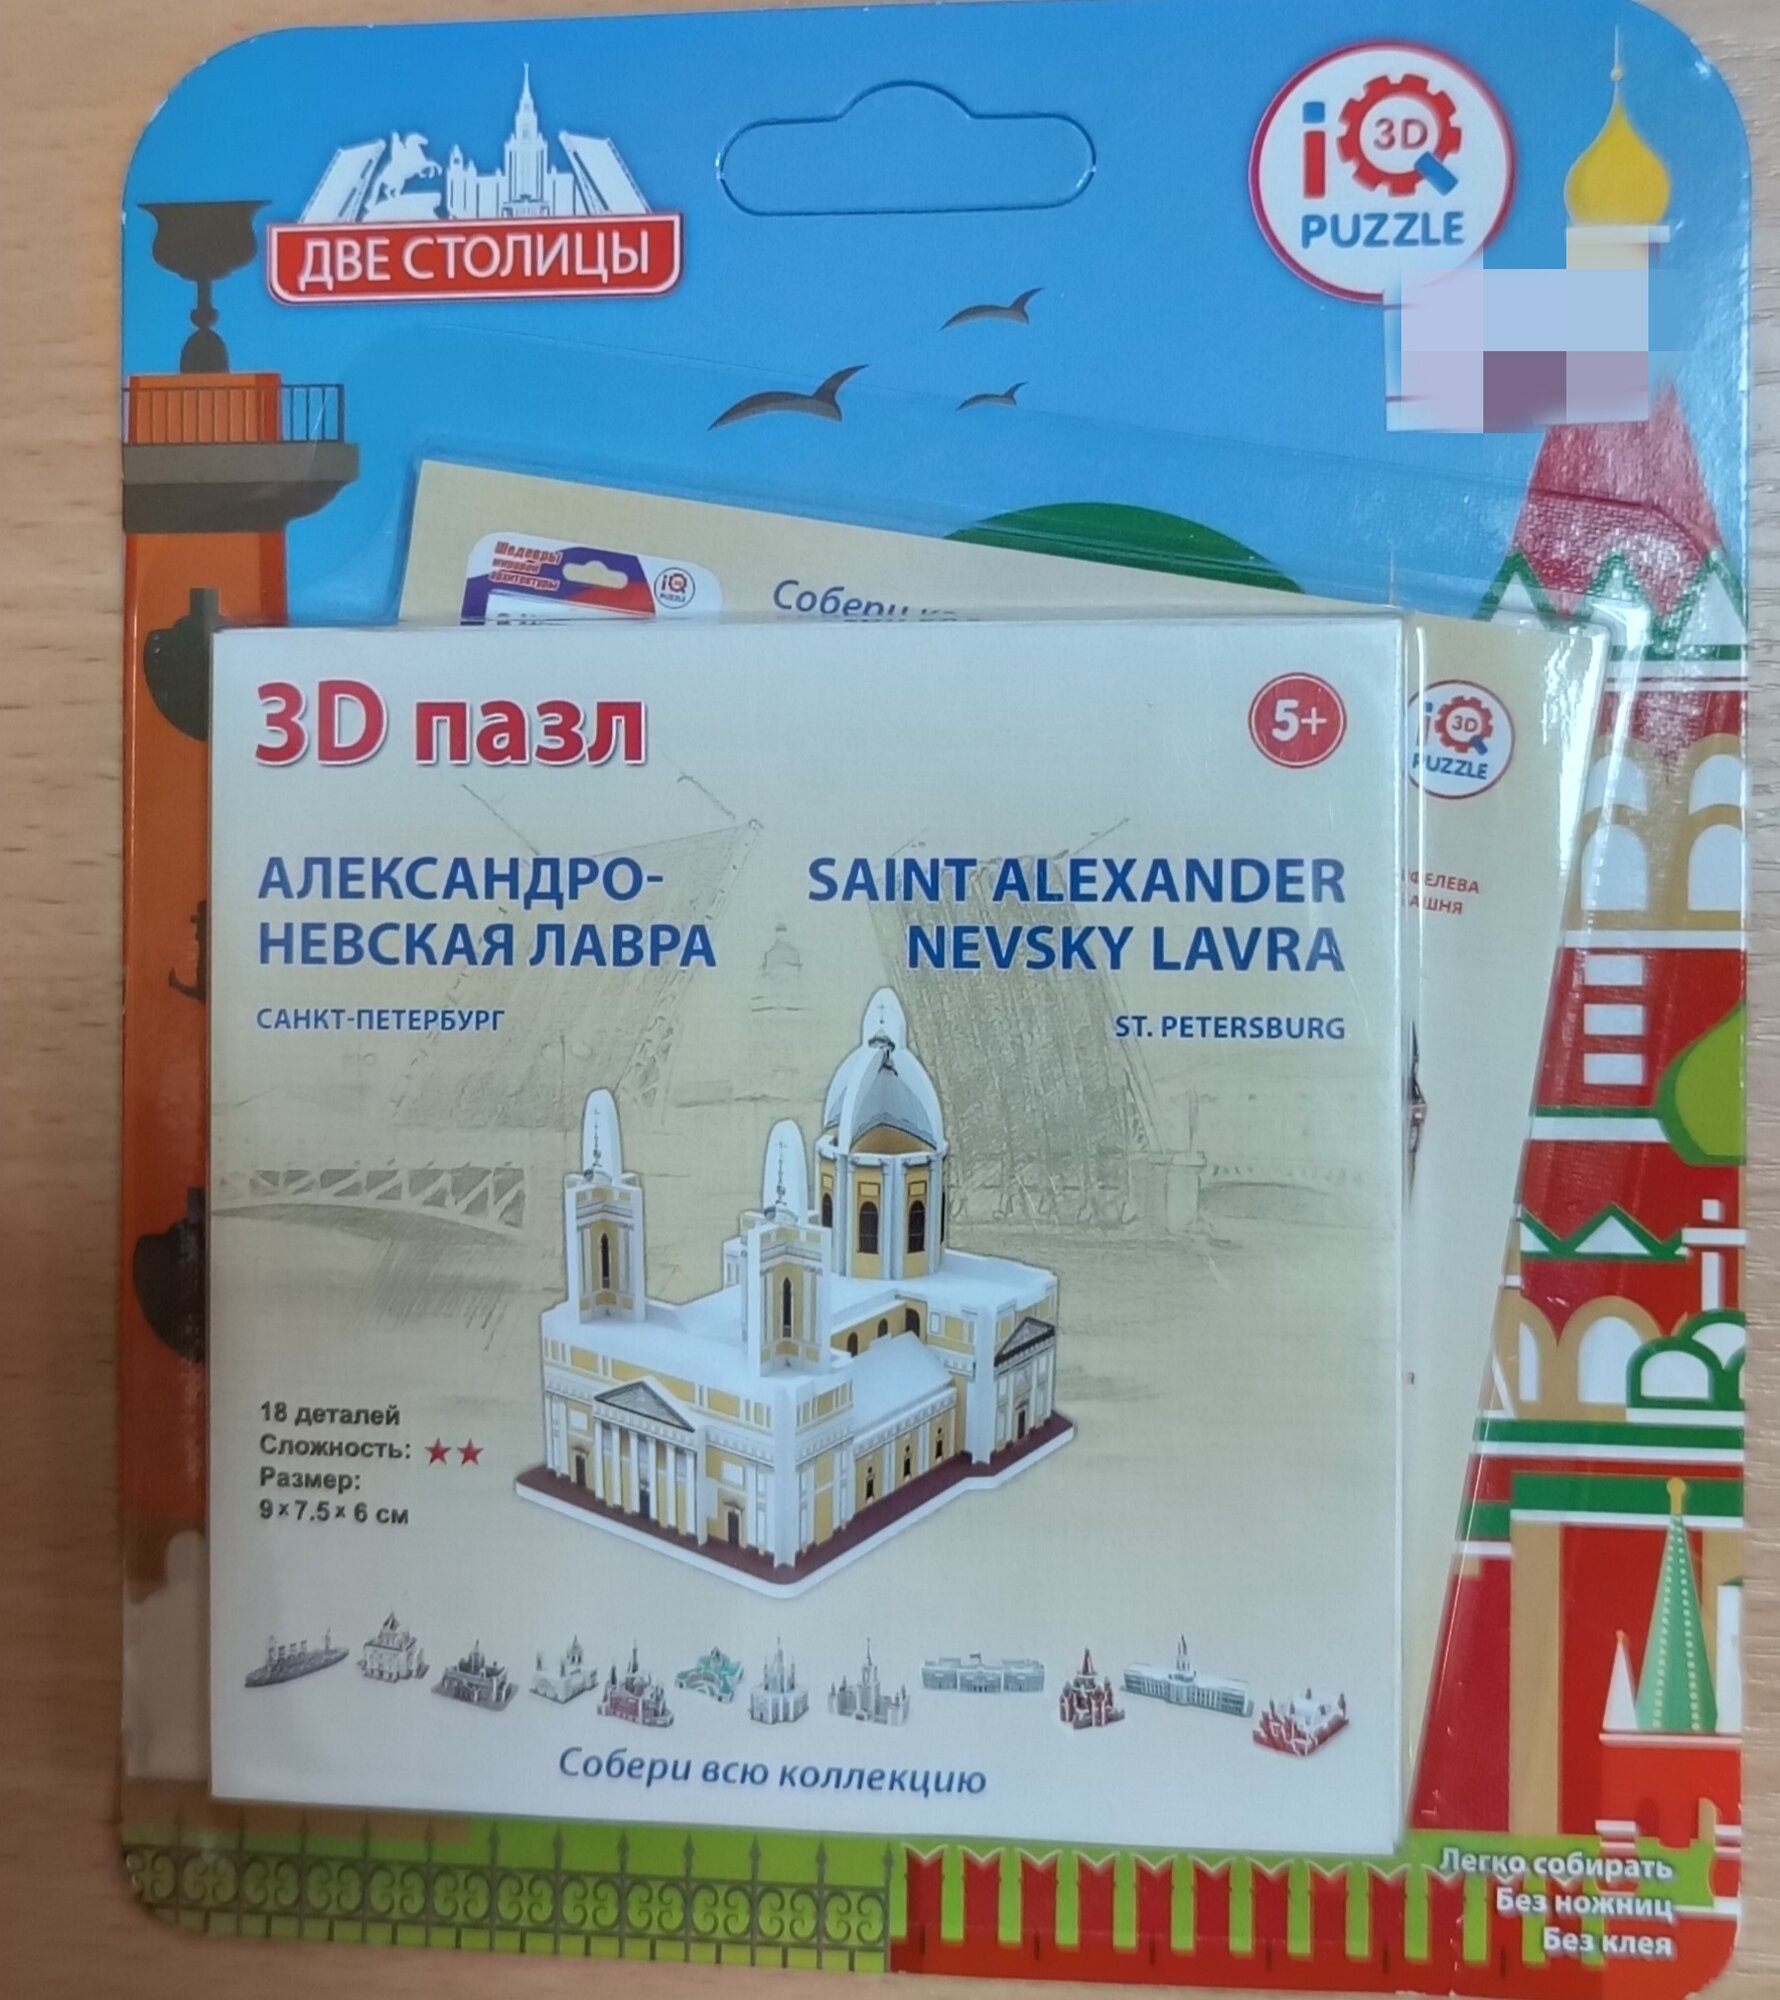 IQ 3D Puzzle: Александро- Невская лавра (СПб)